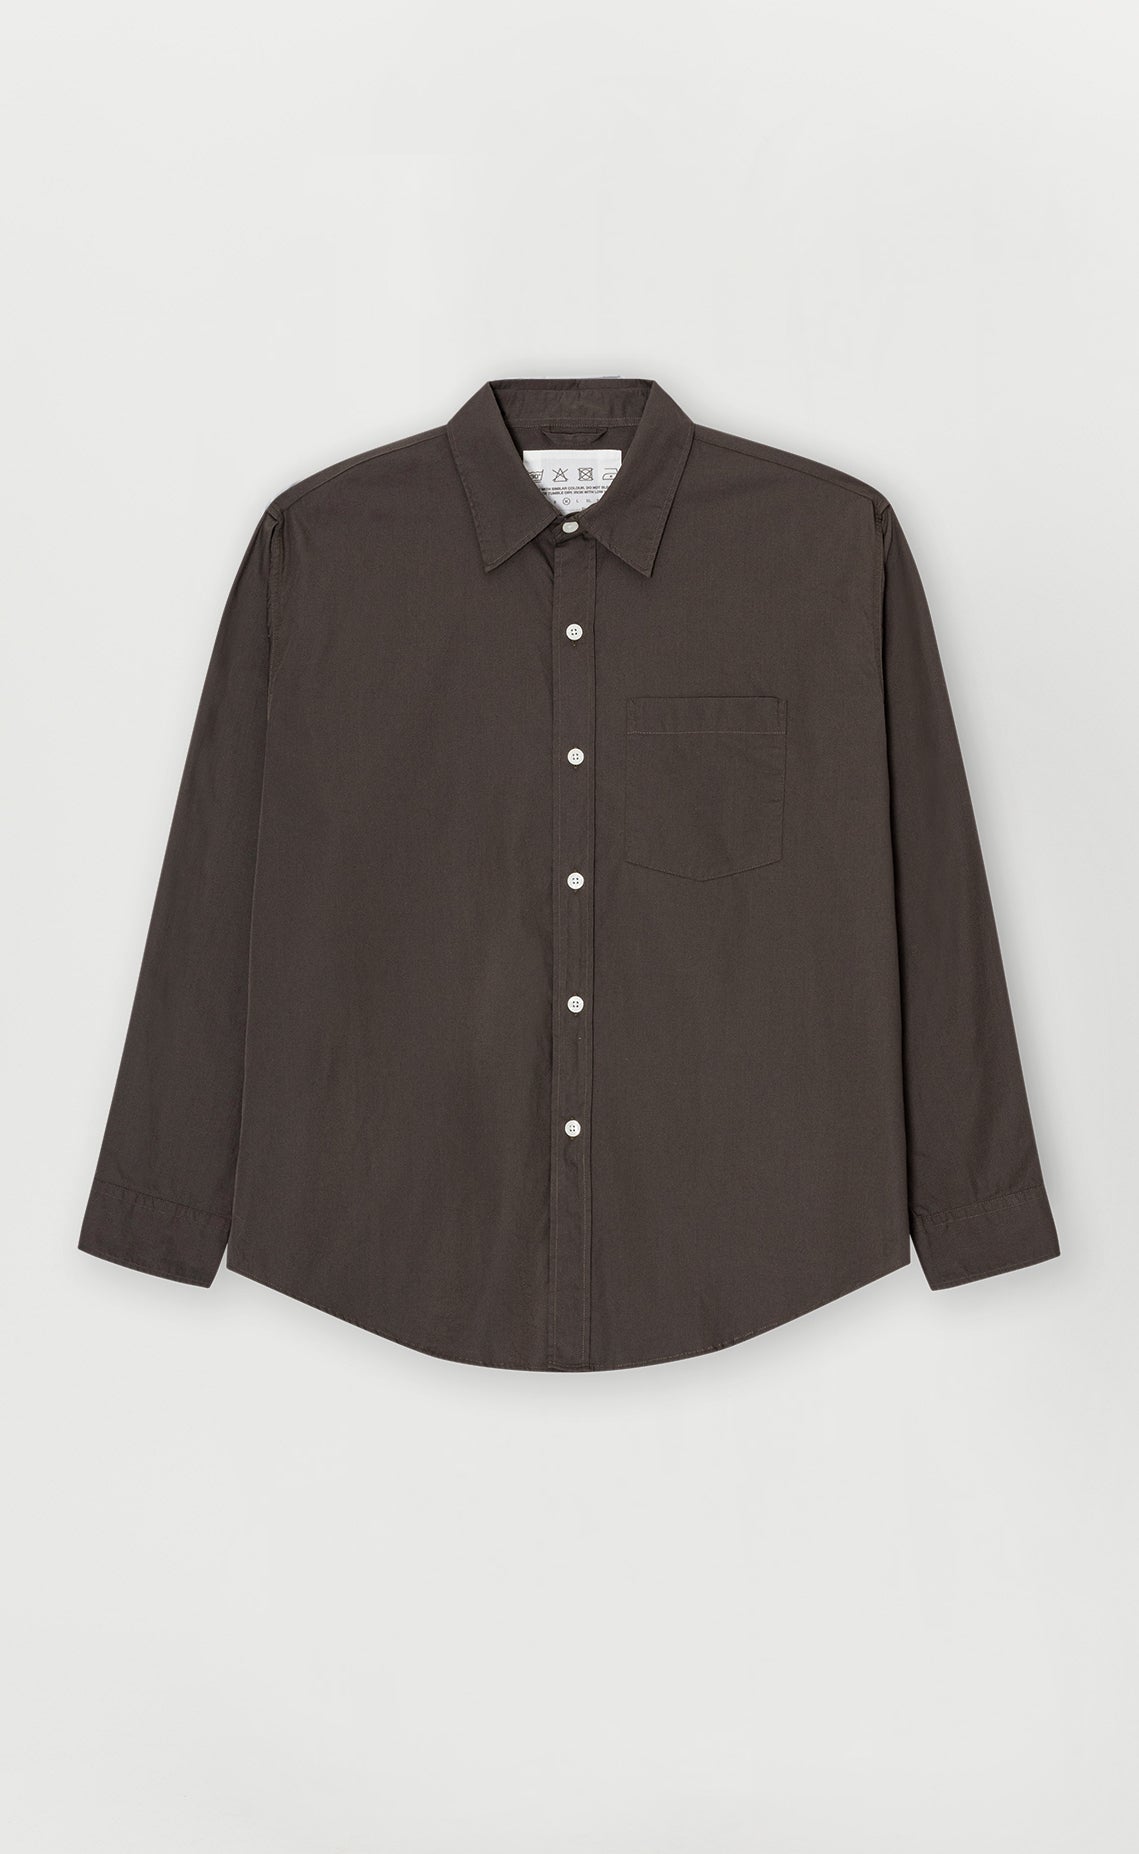 Executive Shirt - Dark Brown